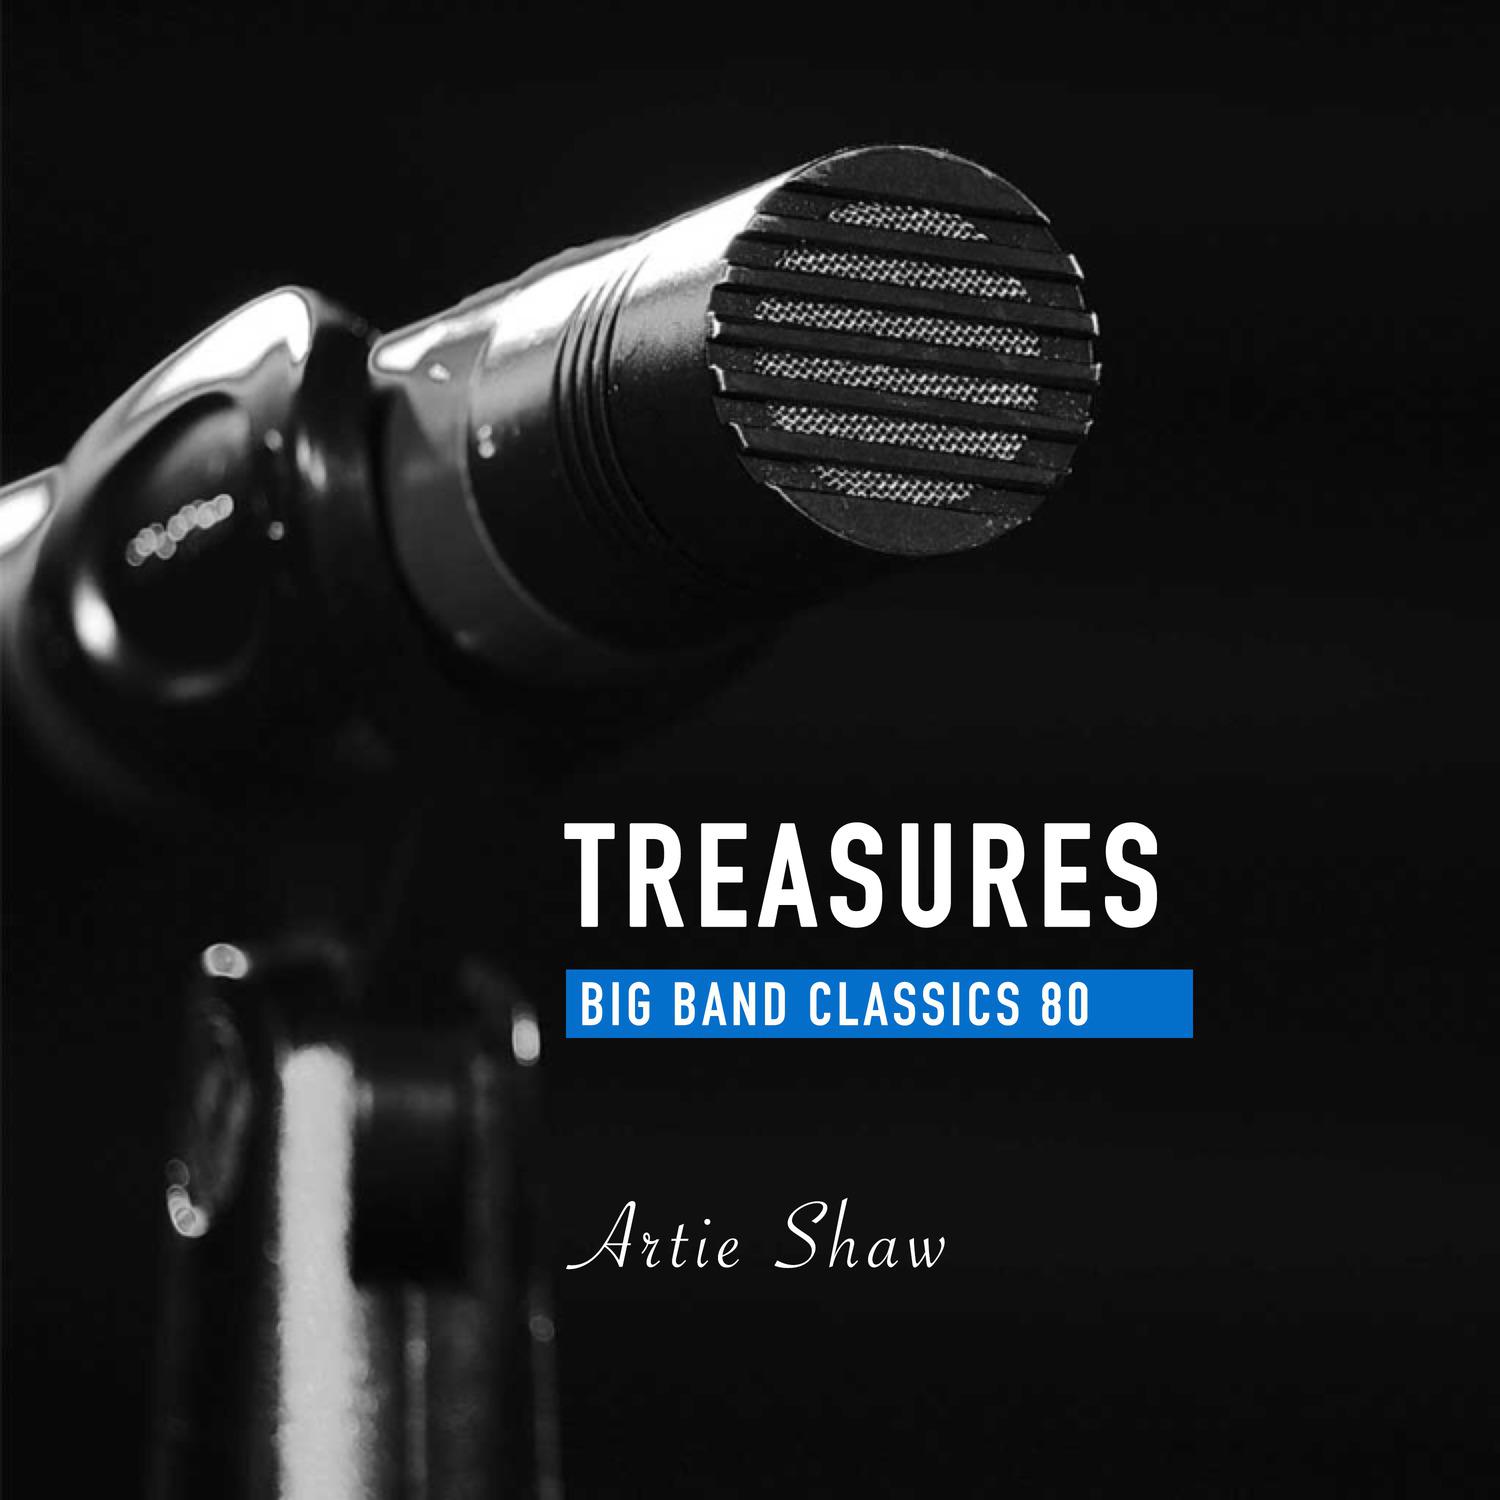 Treasures Big Band Classics, Vol. 80: Artie Shaw